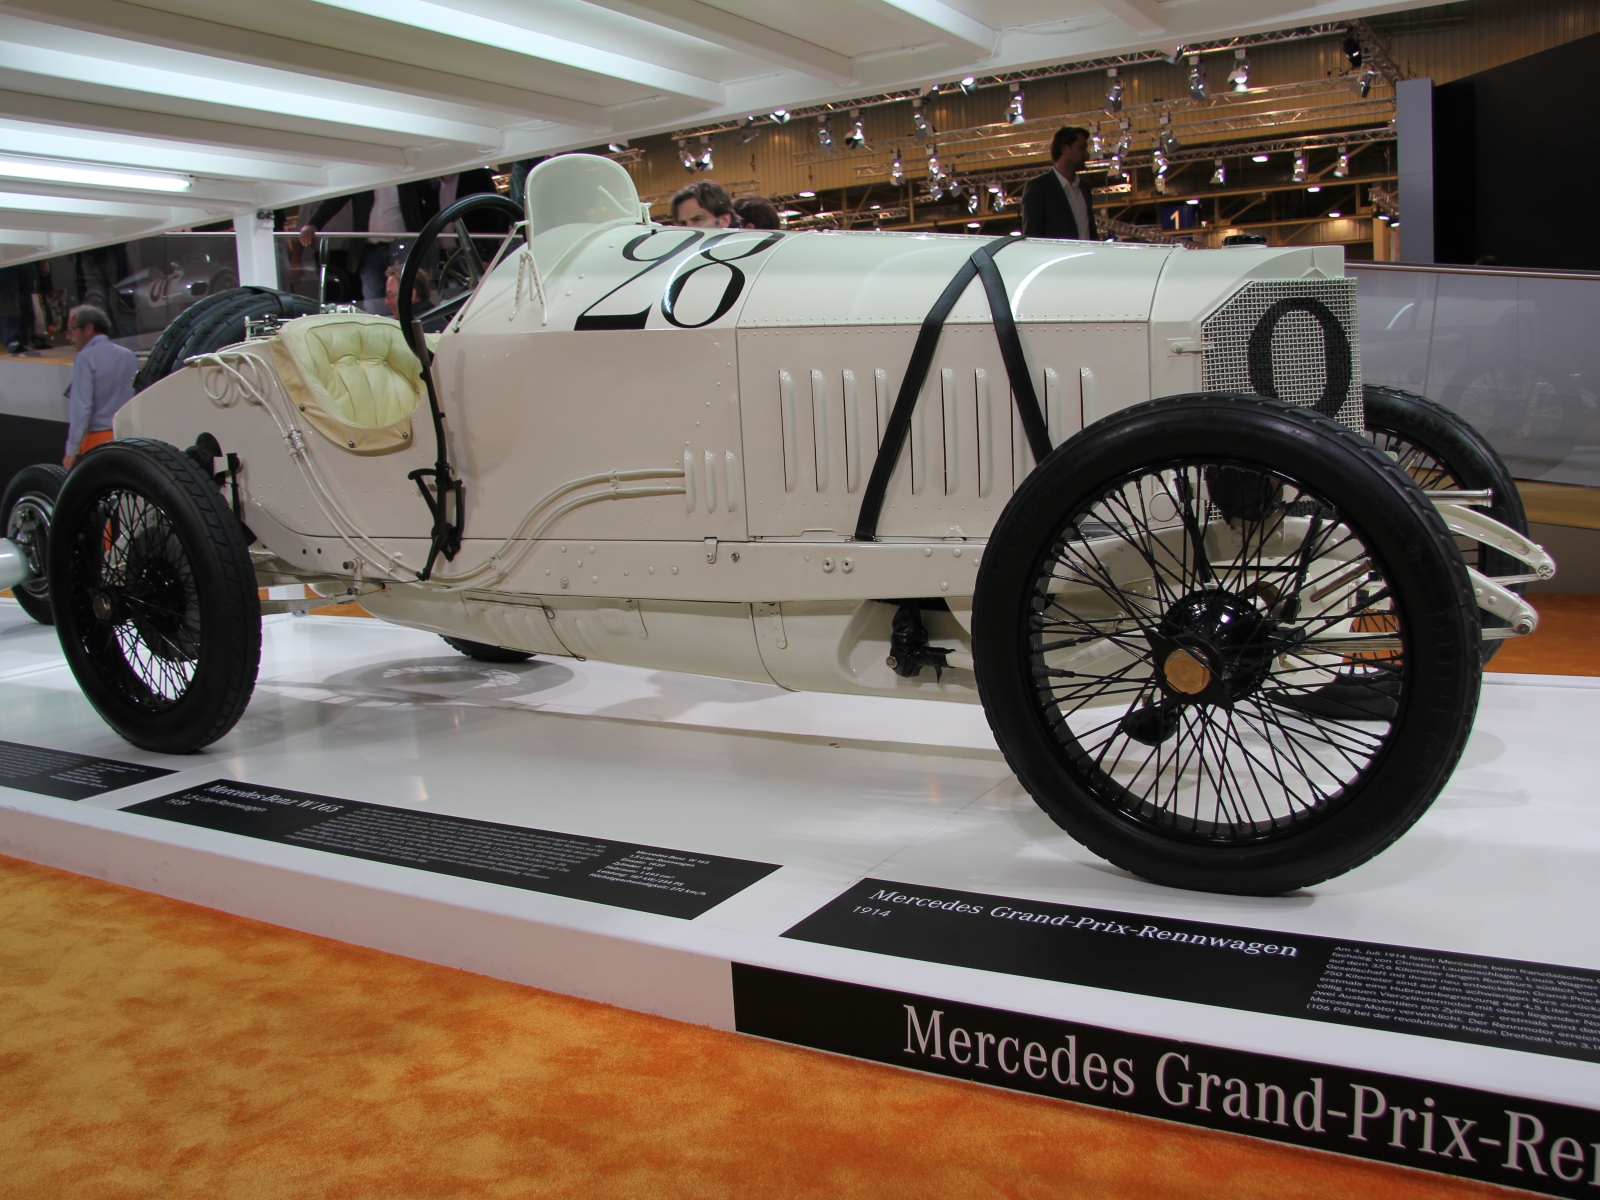 Mercedes Grand-Prix-Rennwagen